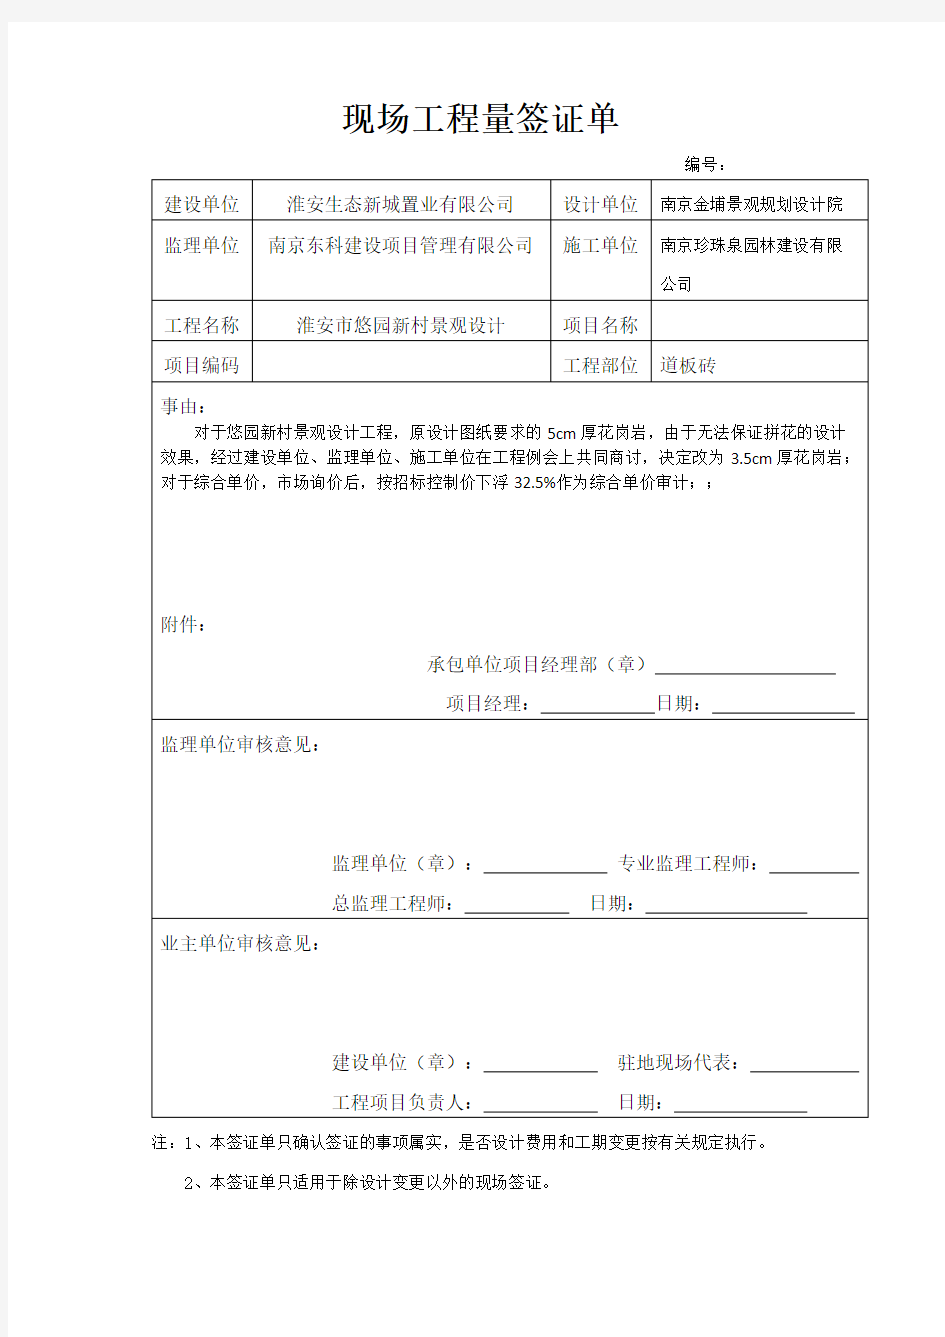 现场工程量签证单2018年江苏(可编辑修改版).